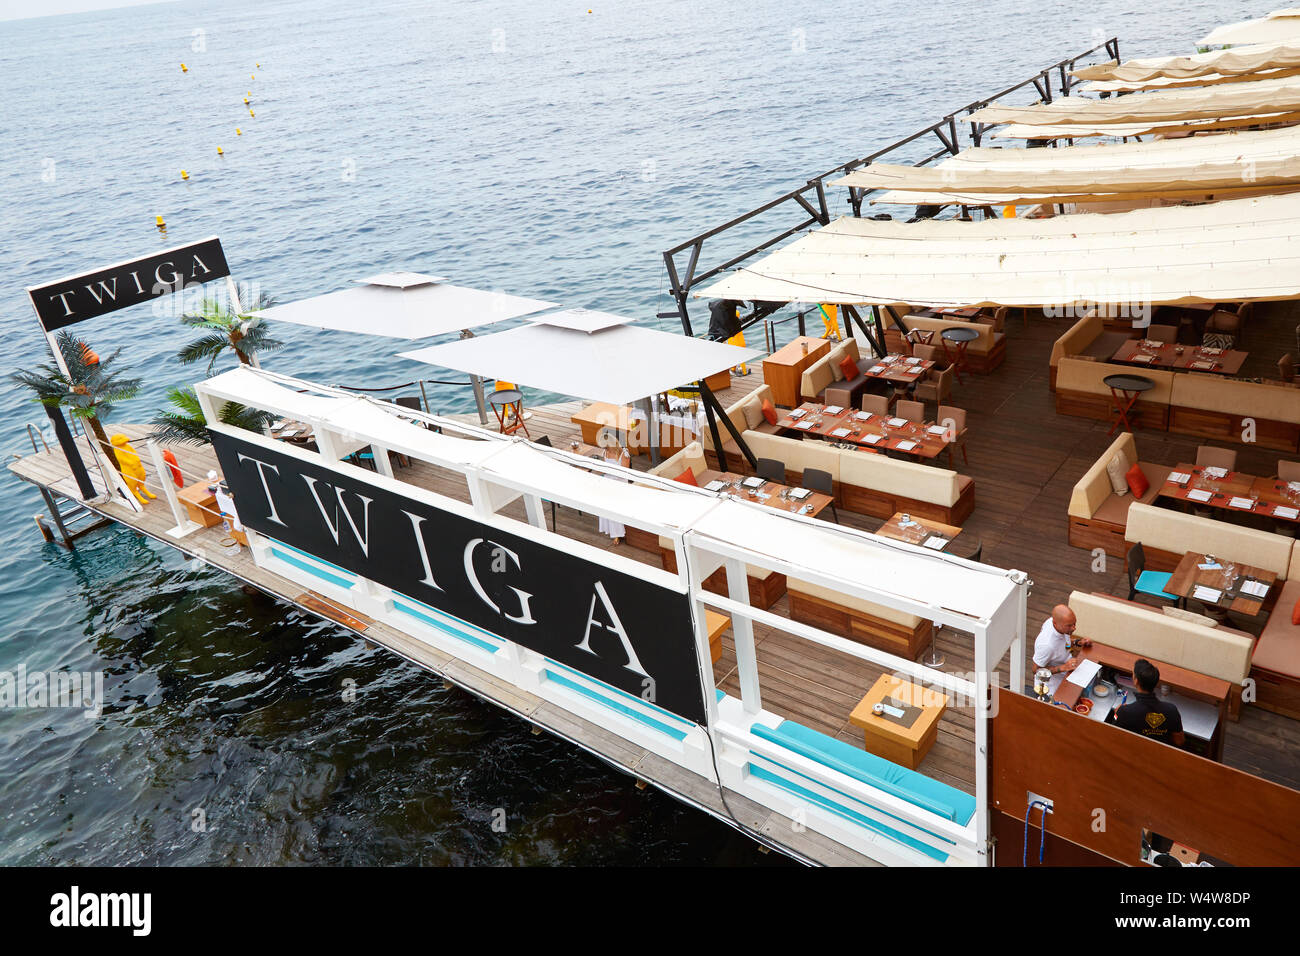 MONTE CARLO, MONACO - AUGUST 19, 2016: Twiga lounge and shisha bar terrace on the sea in a summer day in Monte Carlo, Monaco. Stock Photo